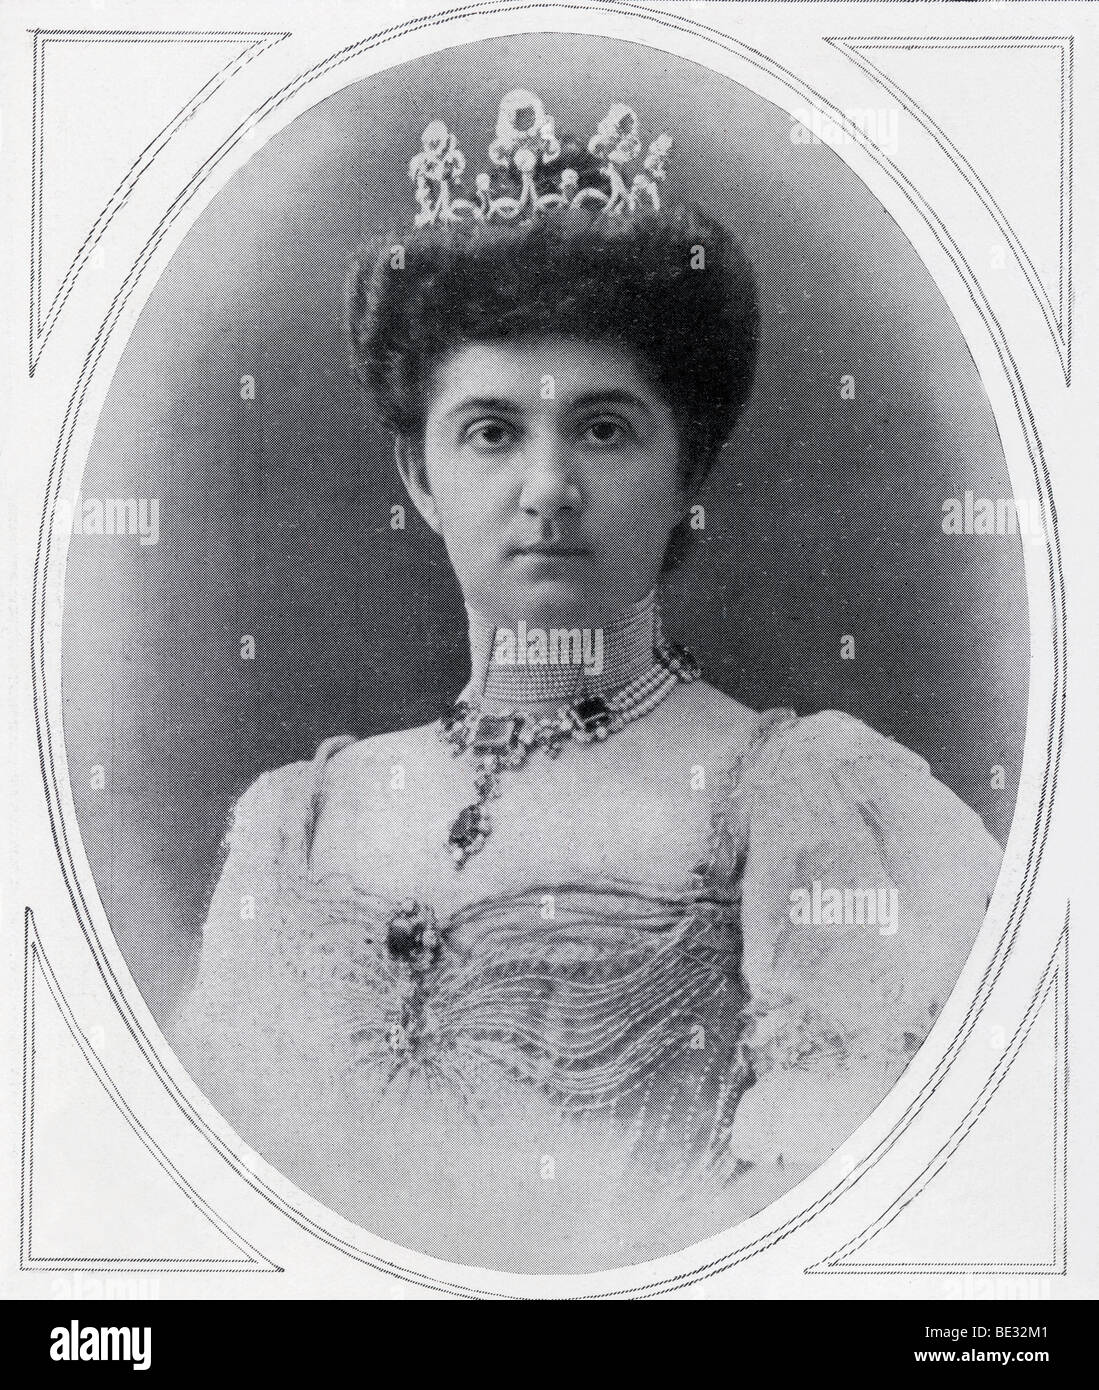 Hélène de Monténégro, née Princesse Jelena Petrovic-Njegos du Monténégro, de 1873 à 1952. Épouse du roi Victor Emmanuel III d'Italie Banque D'Images